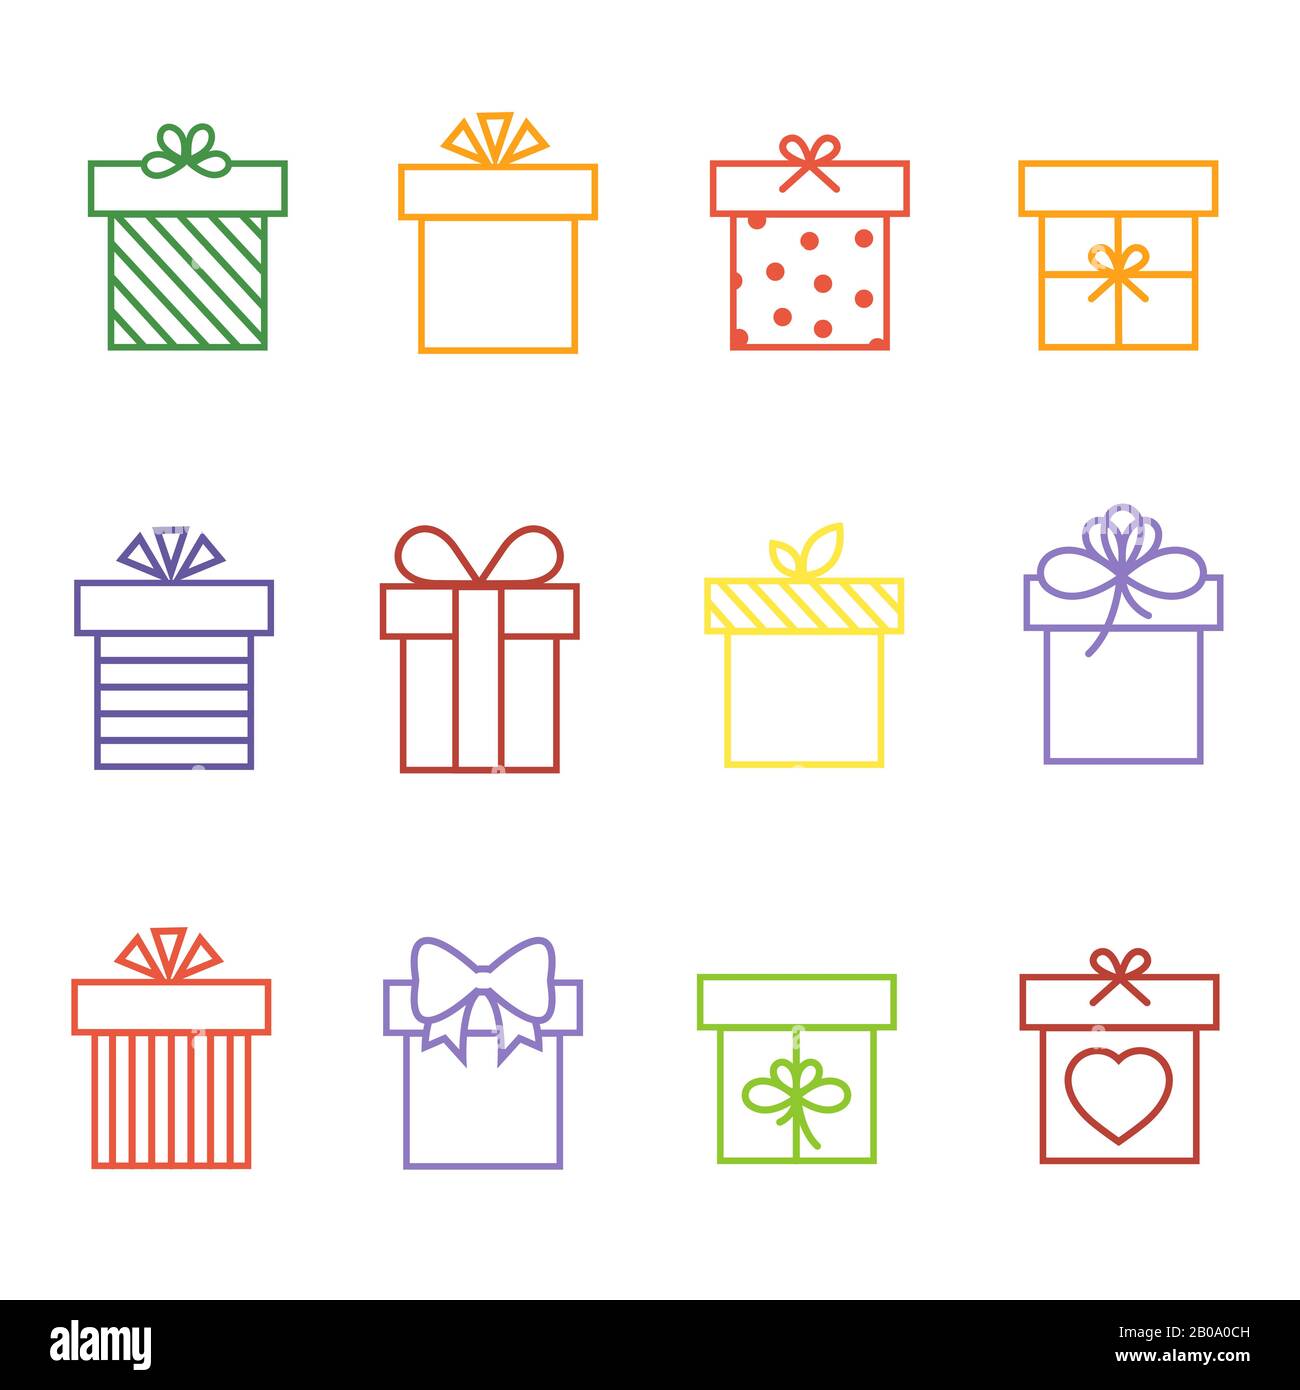 Mehrfarbige Vektor-Geschenkschachteln zum Geburtstag oder Weihnachtsbilder mit dünnen Linien zeigen die Darstellung an Stock Vektor